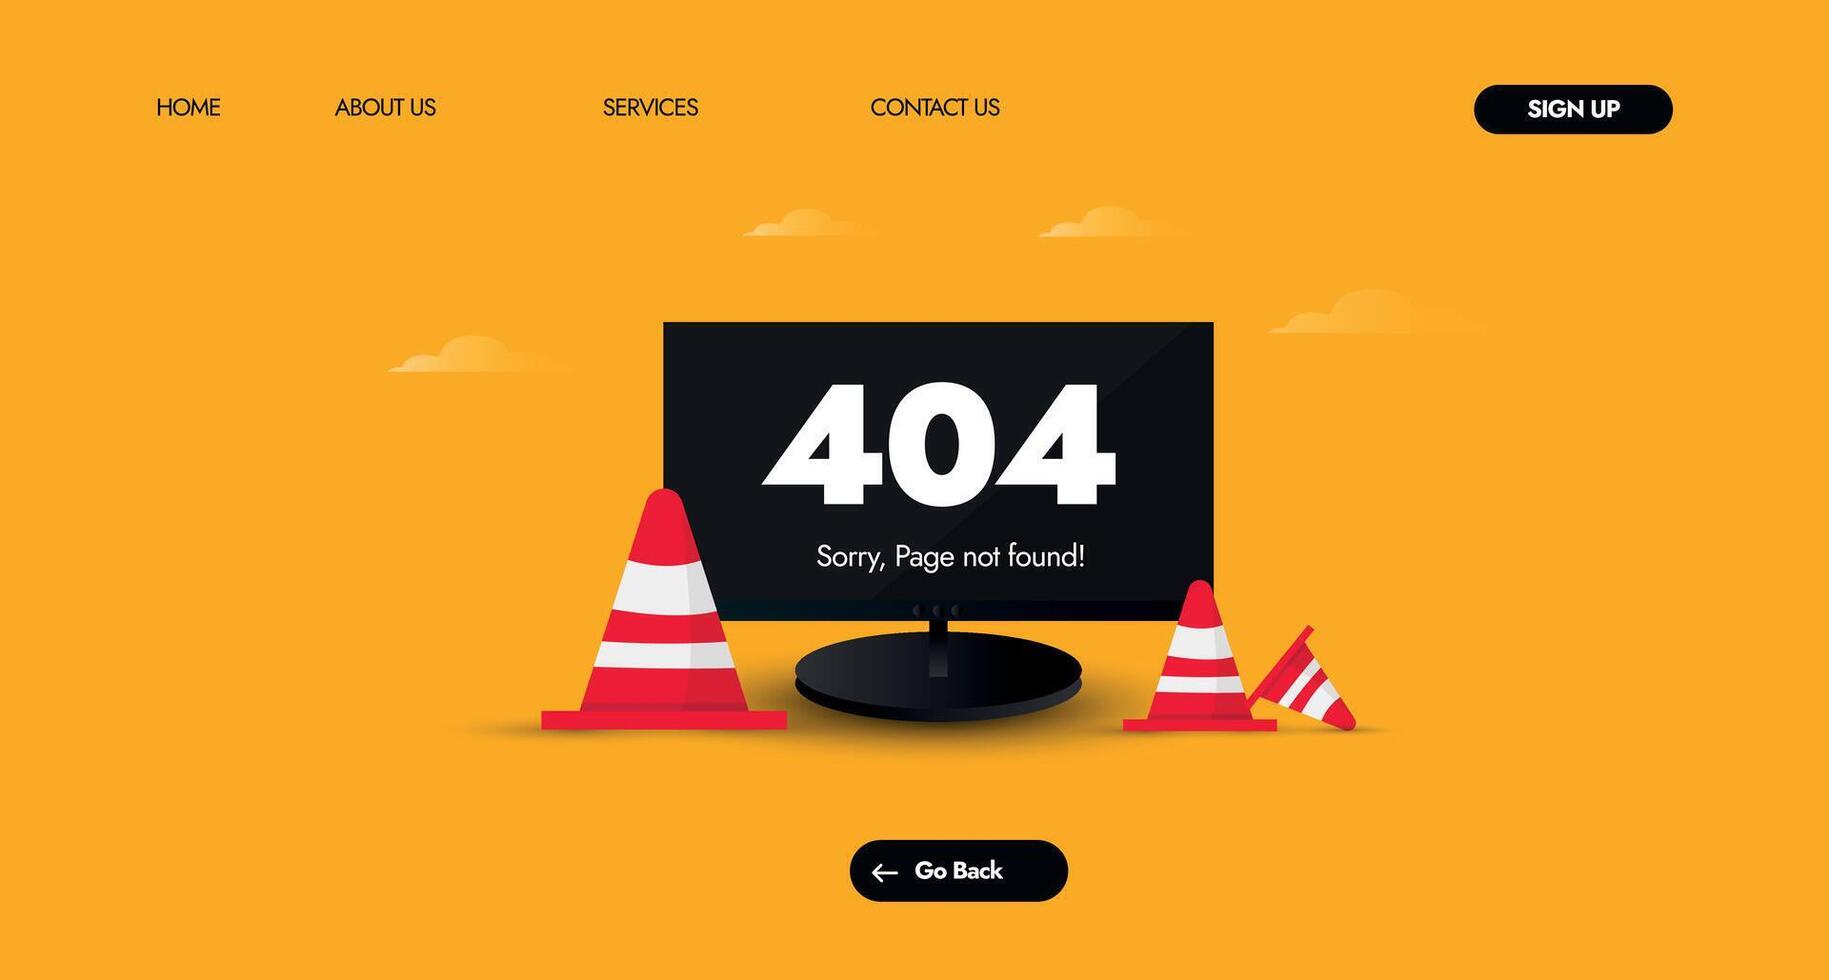 404 fel. fel 404 på svart skärm omslag baner, webb sida mall med röd trafik koner med orange bakgrund. systemet fel, bruten sida mall för hemsida. vektor